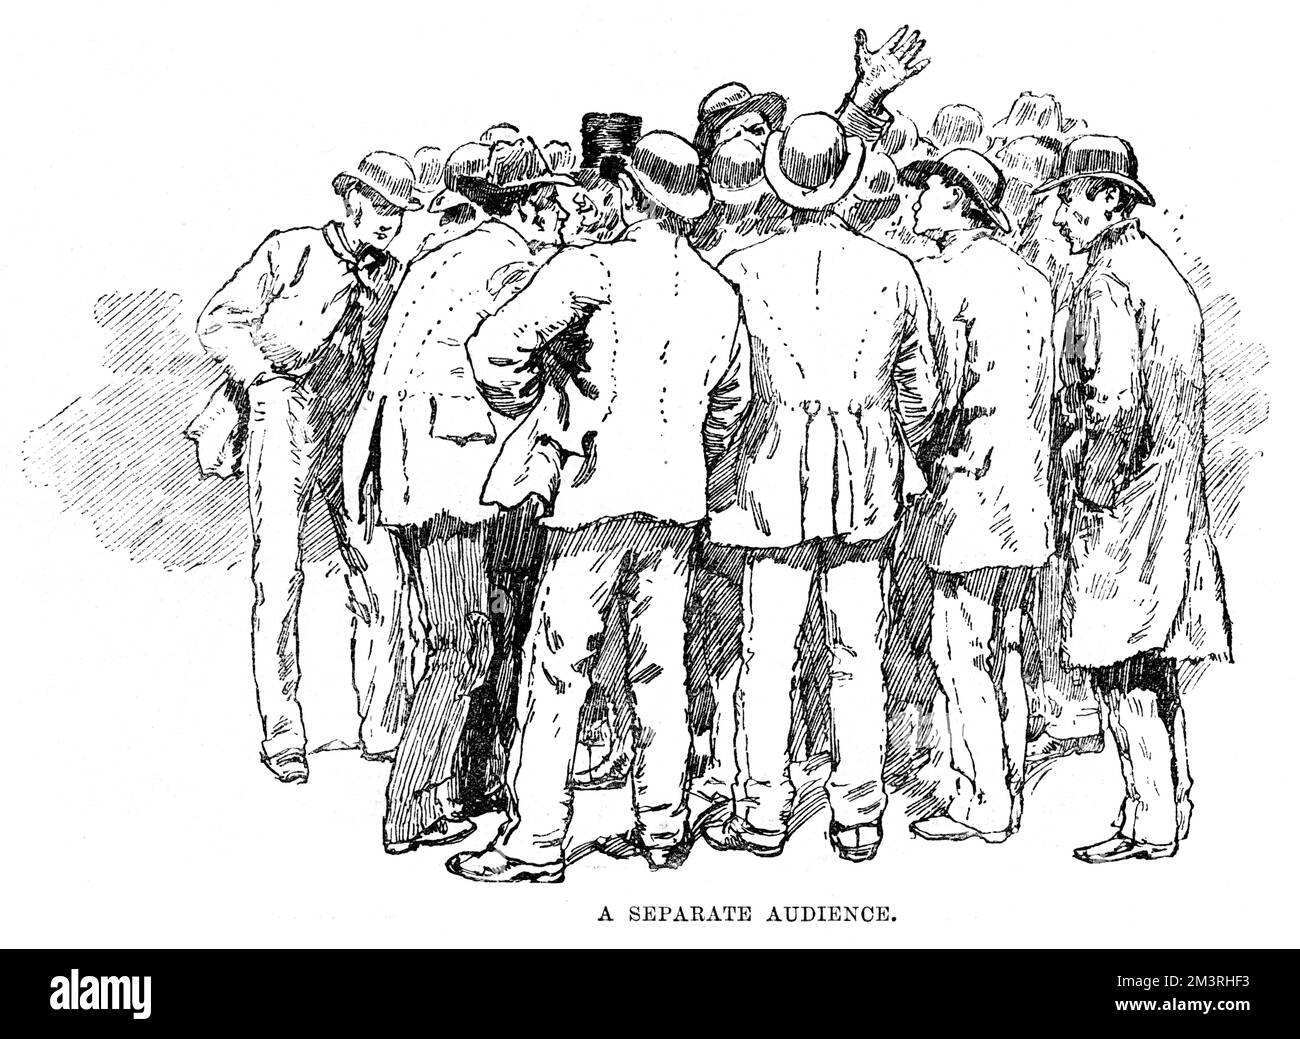 Une foule de chômeurs discutant des enjeux du moment, esquissée lors de la manifestation de Trafalgar Square à Londres, au moment des émeutes de l'Ouest en 1886. Lors d’une réunion en plein air d’ouvriers et d’artisans du quai East End au chômage à Trafalgar Square, les gens ont été enflammés à la suite de discours incendiaires, et se sont révoltés, causant des ravages dans les rues à la mode du West End. Date: 1886 Banque D'Images